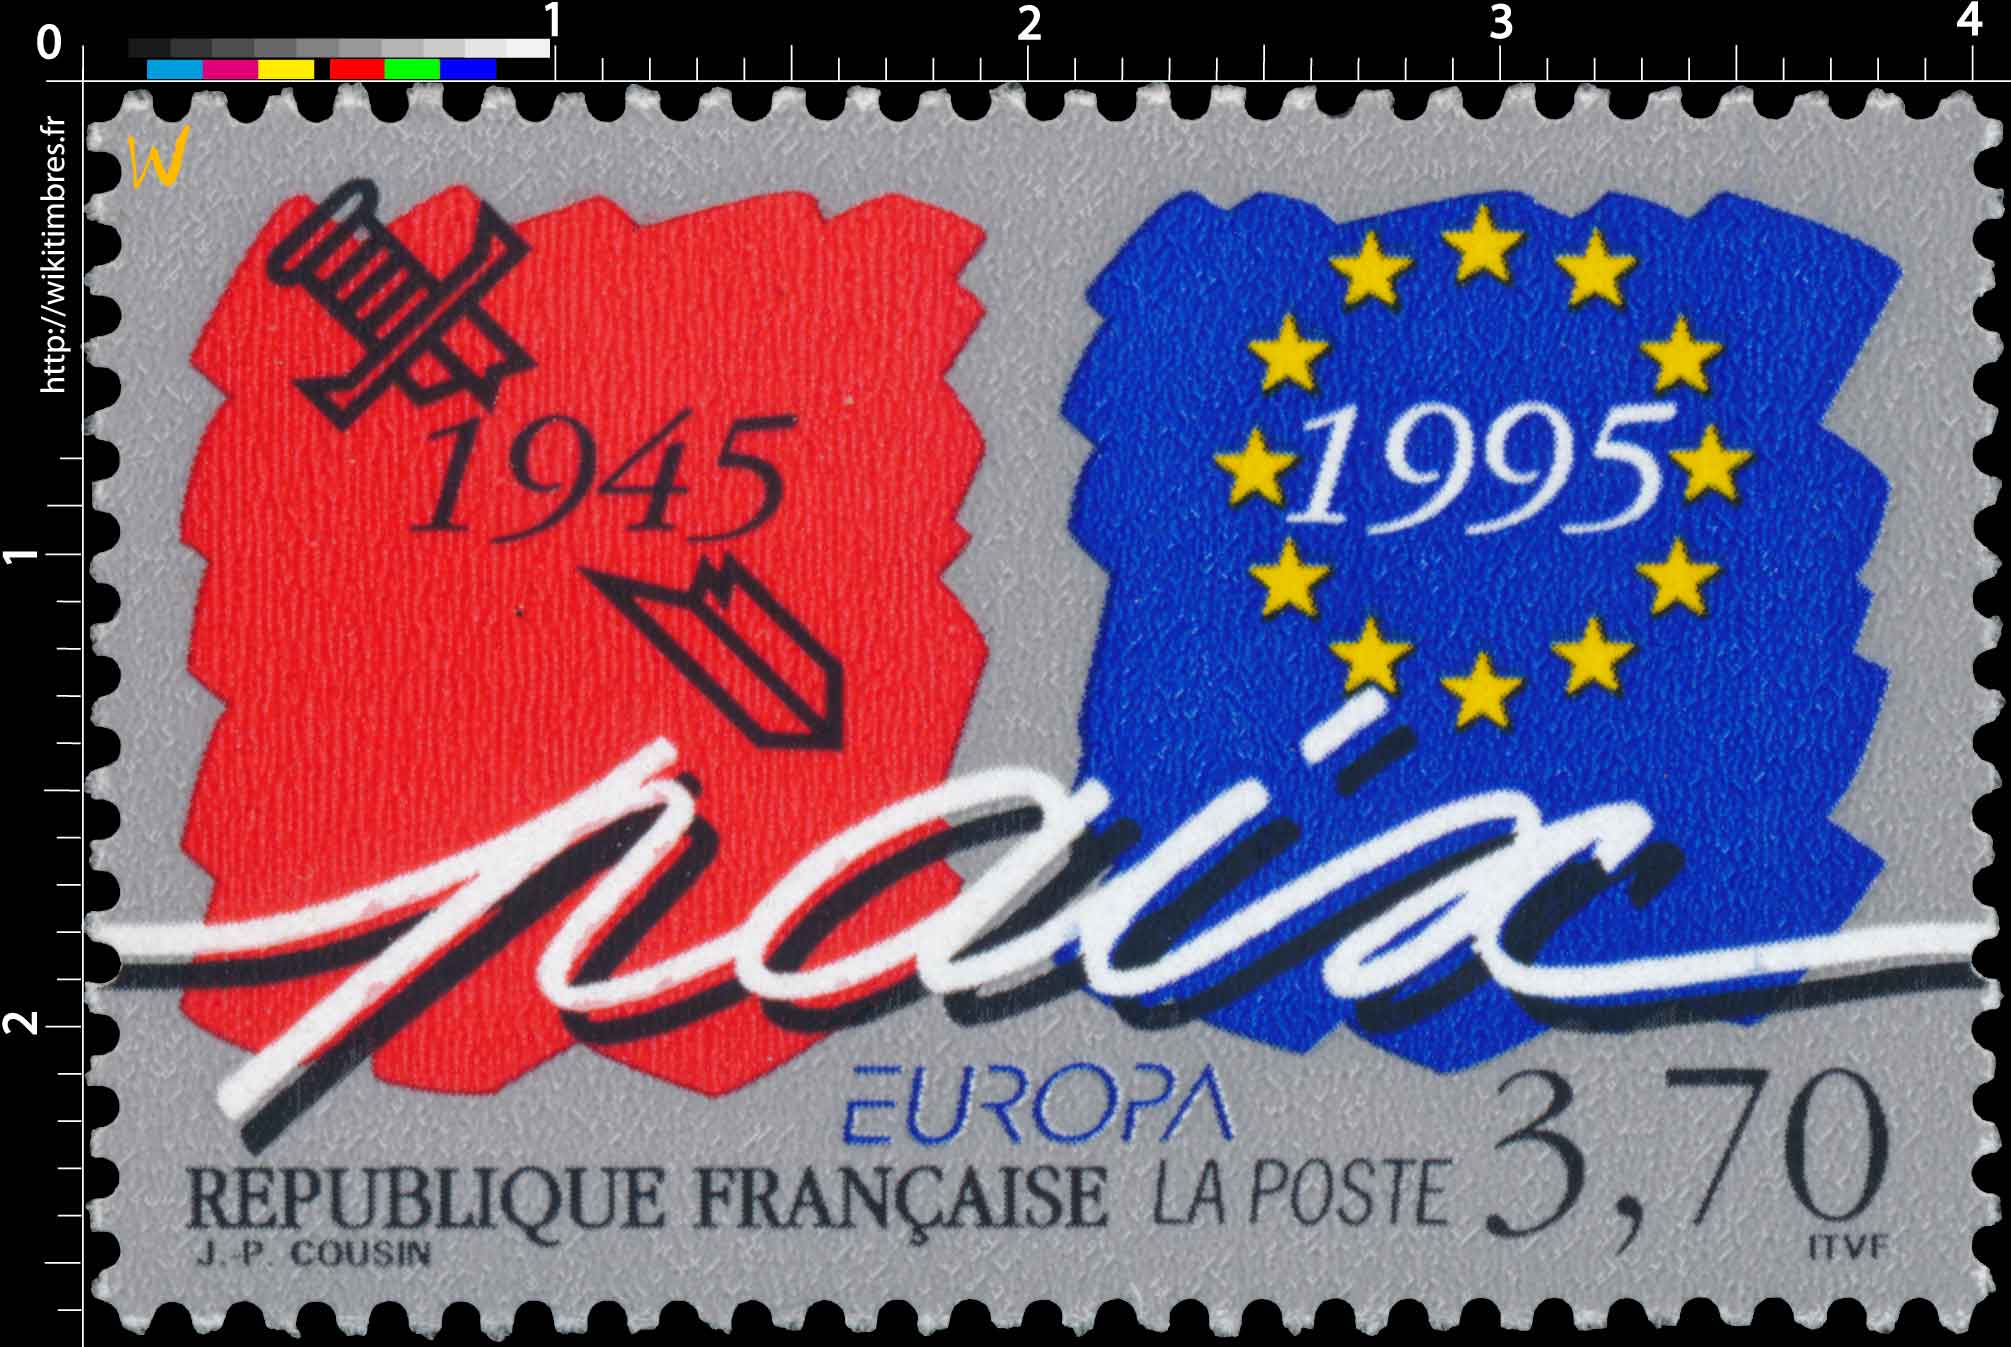 EUROPA paix 1945-1995